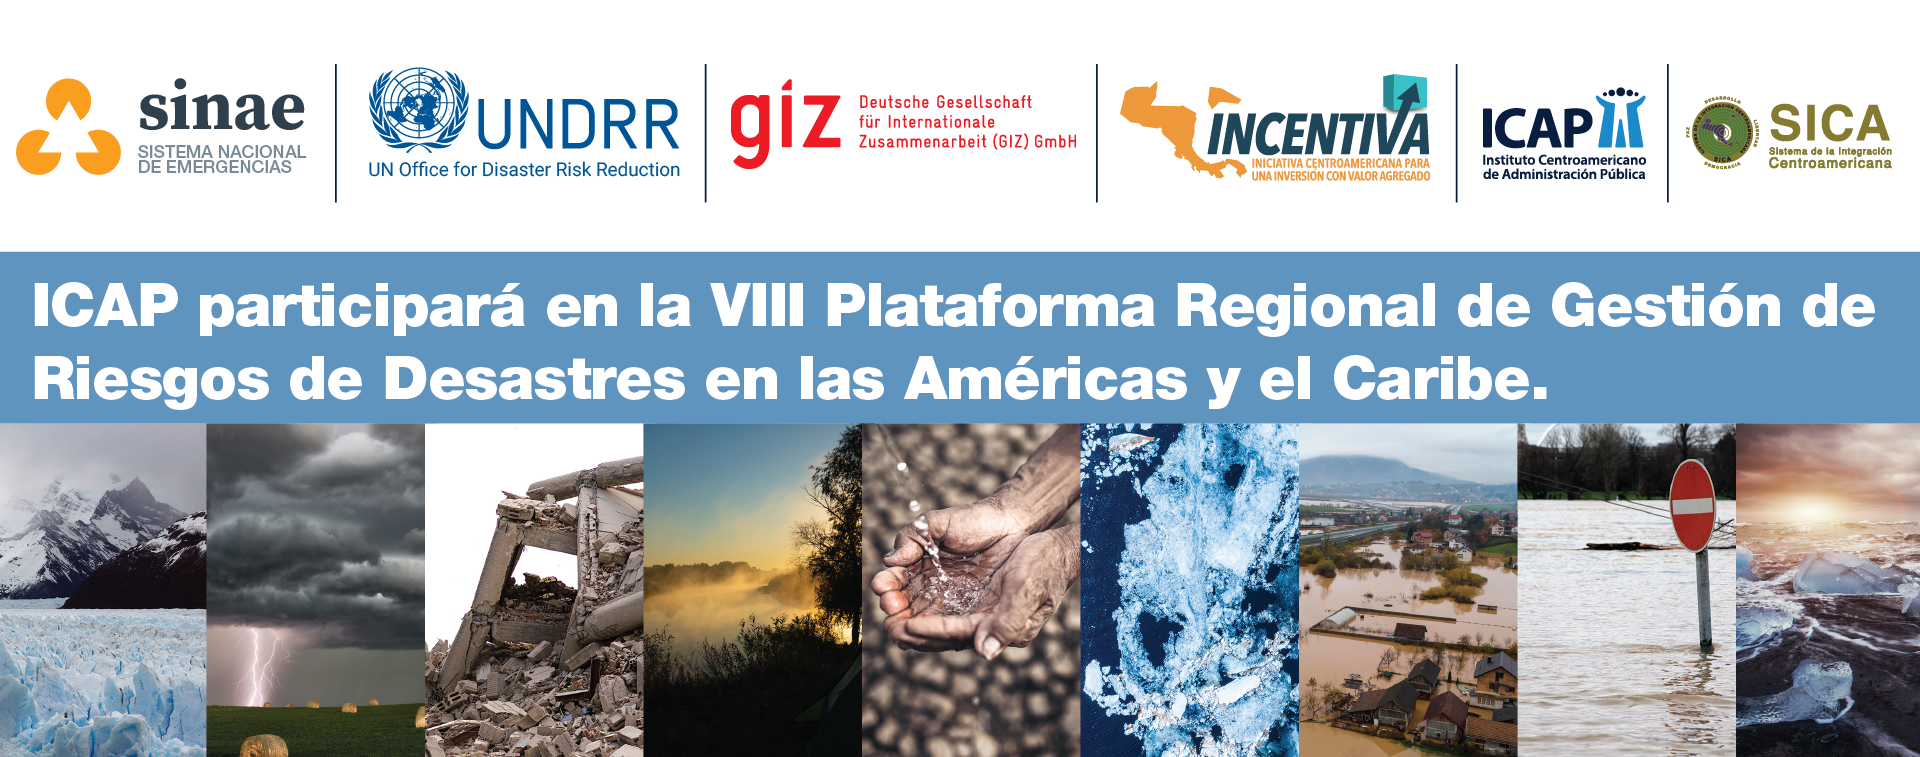 ICAP participará en la VIII Plataforma Regional de Gestión de Riesgos de Desastres en las Américas y el Caribe.